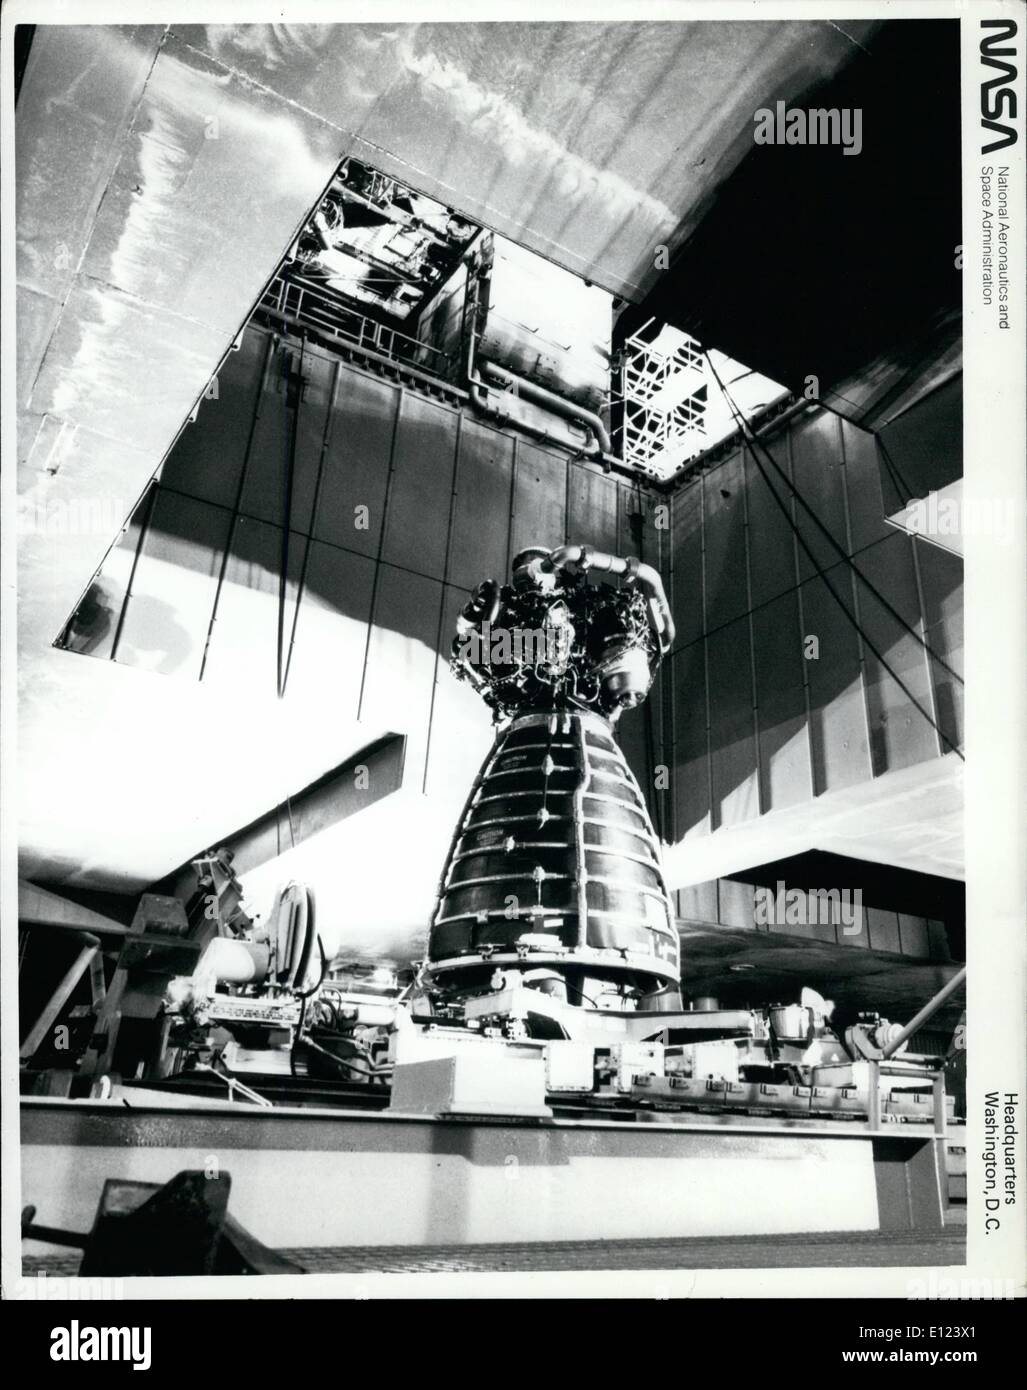 Lug. 07, 1984 - Il Centro Spaziale Kennedy, Fla. -- il 3 motore principale viene rimossa dalla estremità di poppa della navetta spaziale orbitare scoperta dopo un lancio abortito il 26 giugno. Lo Space Shuttle computer di bordo ha terminato il conto alla rovescia in T-4 secondi dopo una valvola per carburante nel motore non è riuscito ad aprire correttamente durante la sequenza di accensione. Un nuovo motore che non ha volato ma è stato testato su Discovery durante il volo la prontezza di cottura è la sostituzione. Foto Stock